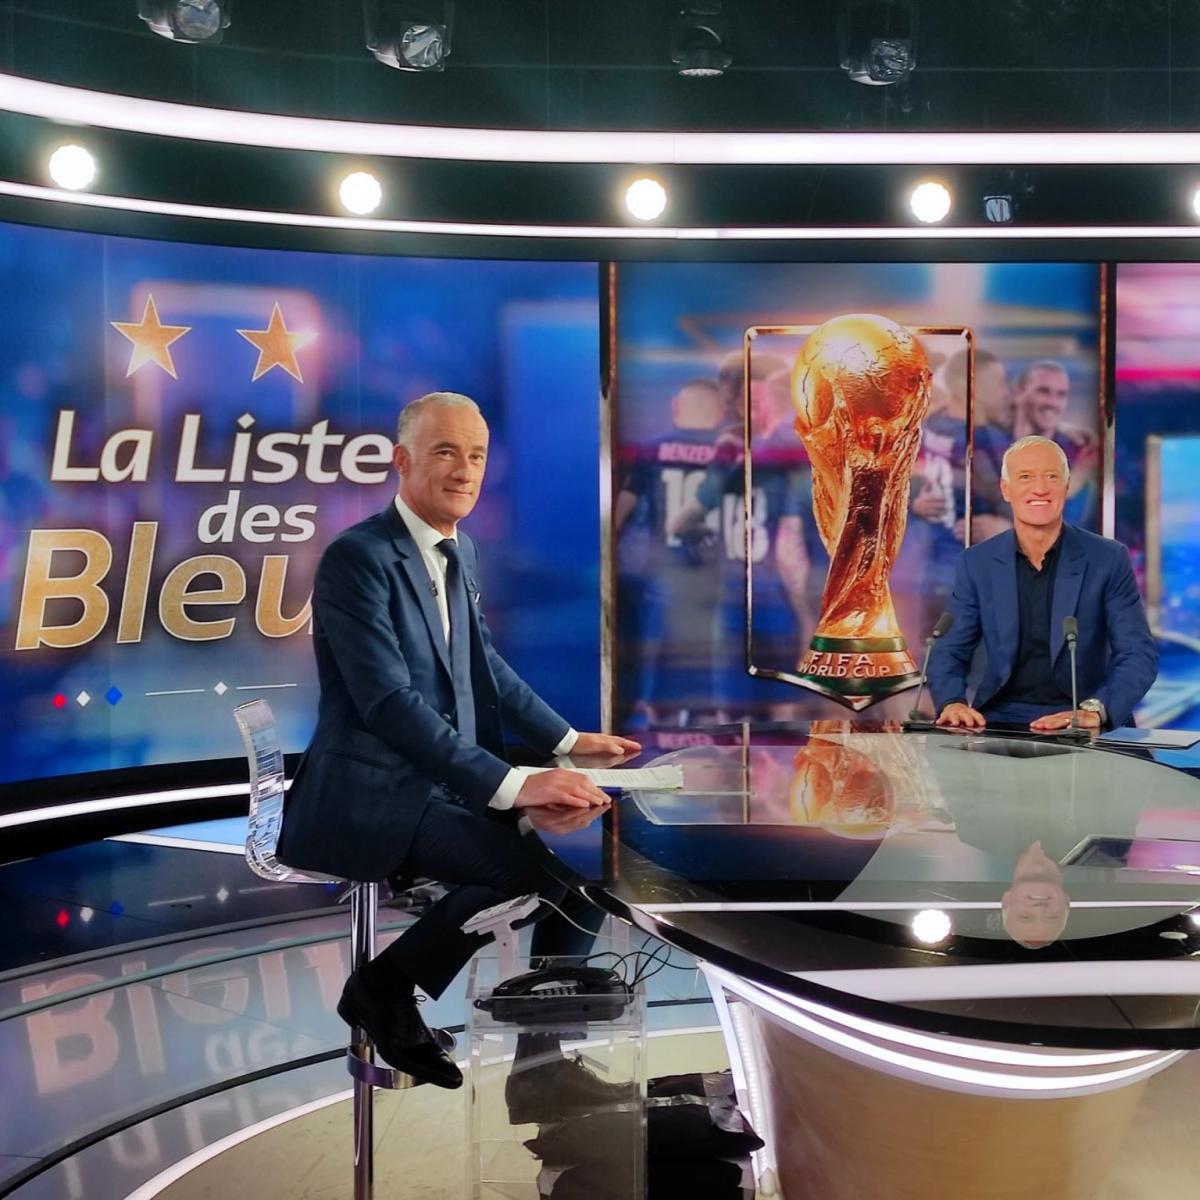 Deschamps anunciando la lista en la televisión francesa | Foto: EquipeDeFrance